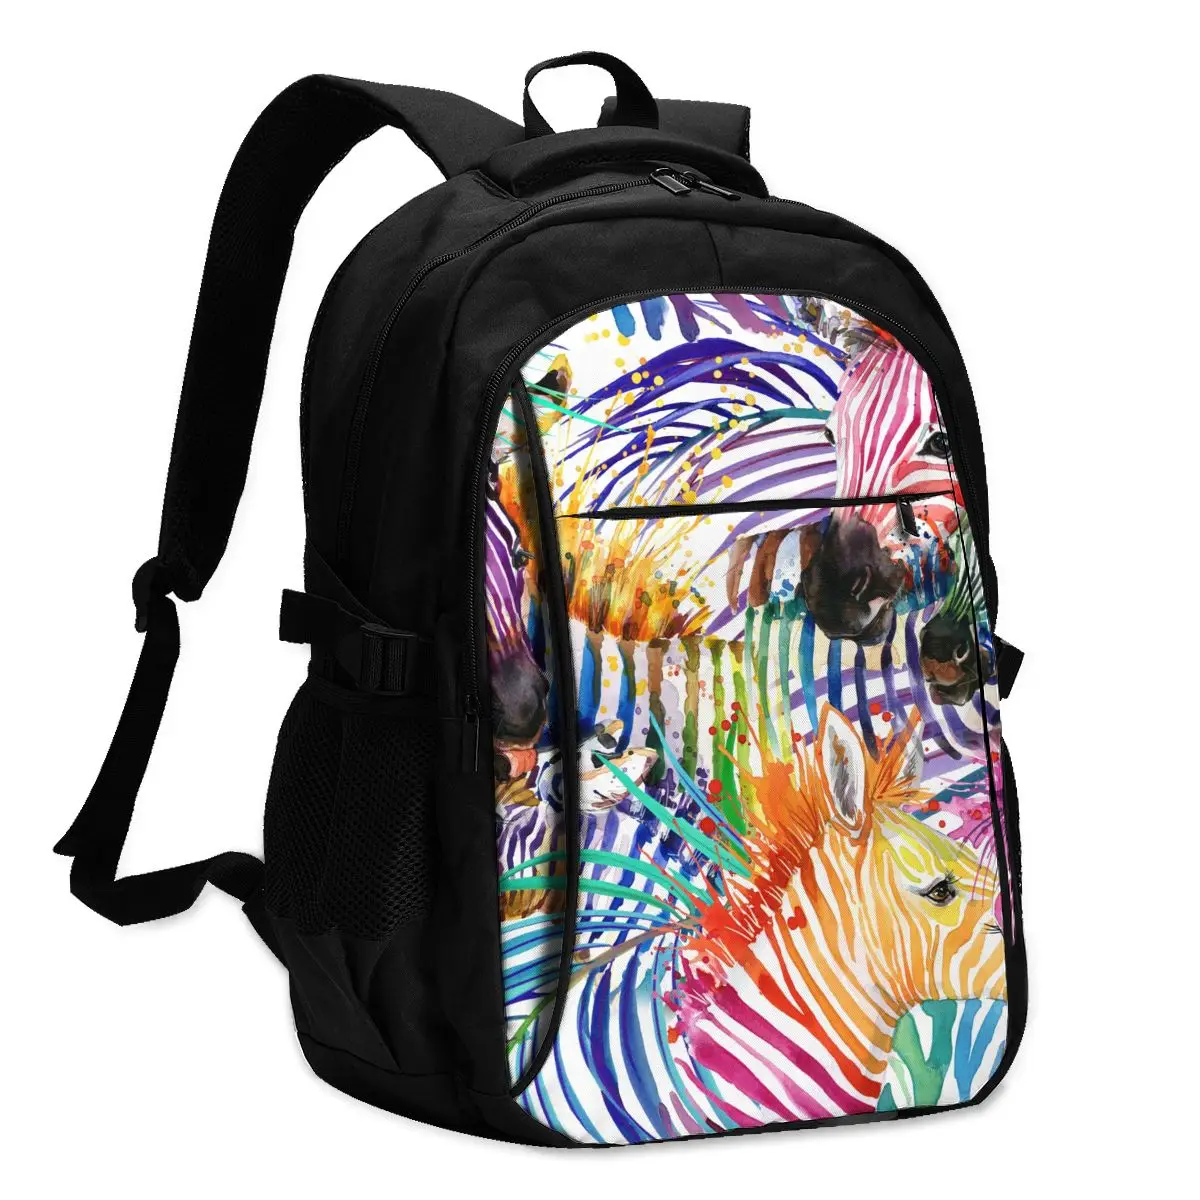 

2021 Прохладный печати ноутбук рюкзак Радужная Зебра зарядка через USB путешествия Для женщин Мужской школьная сумка Mochila